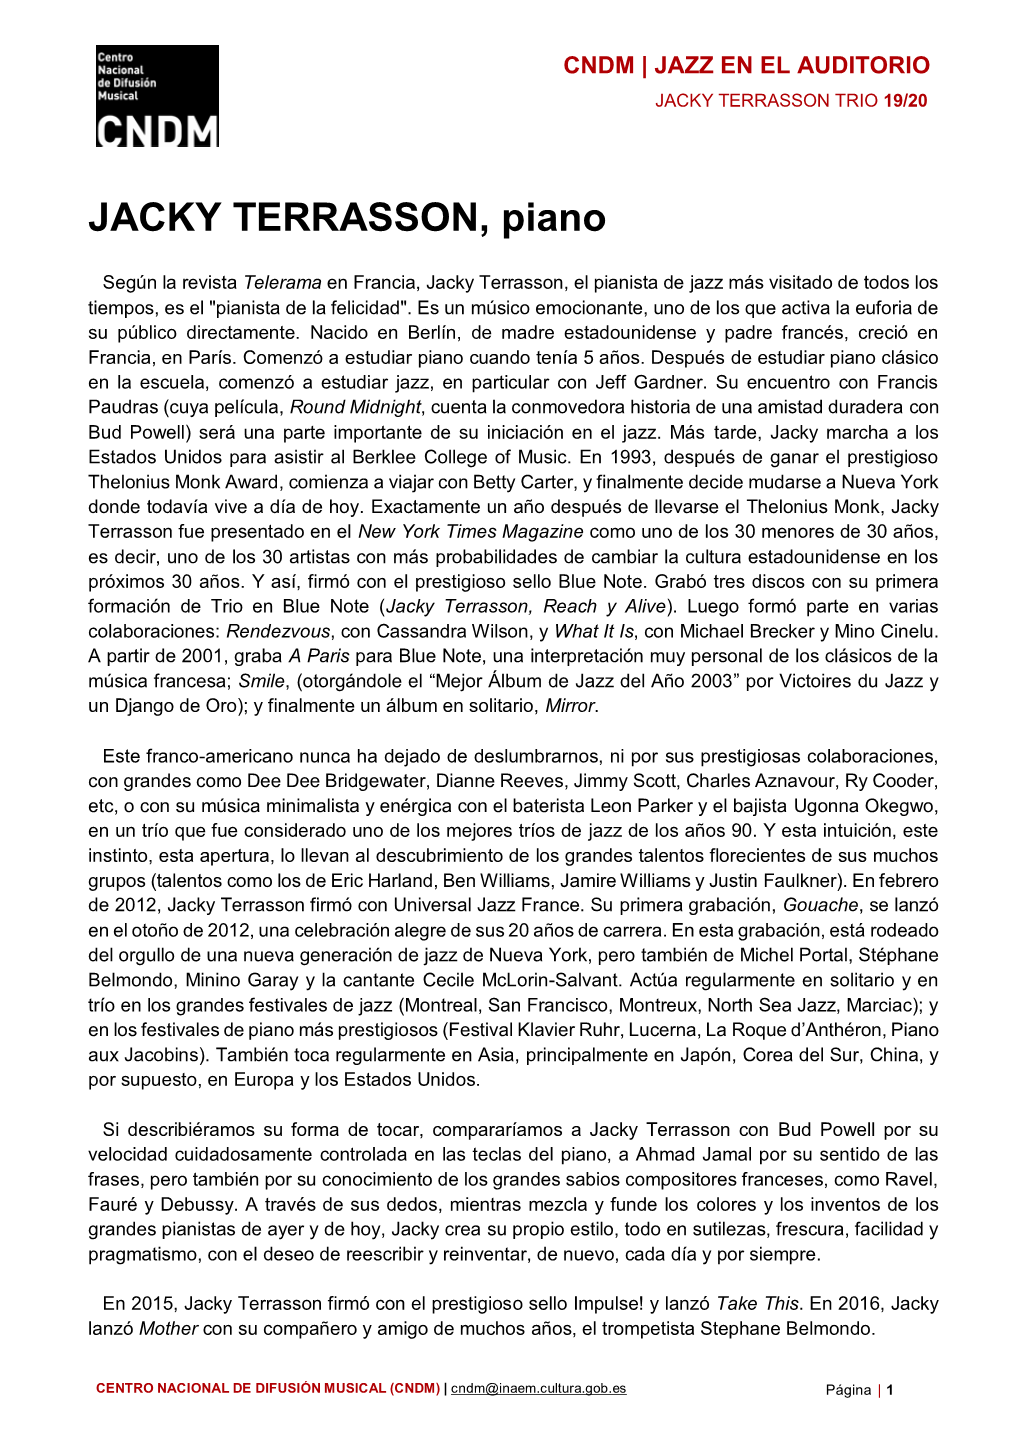 JACKY TERRASSON, Piano